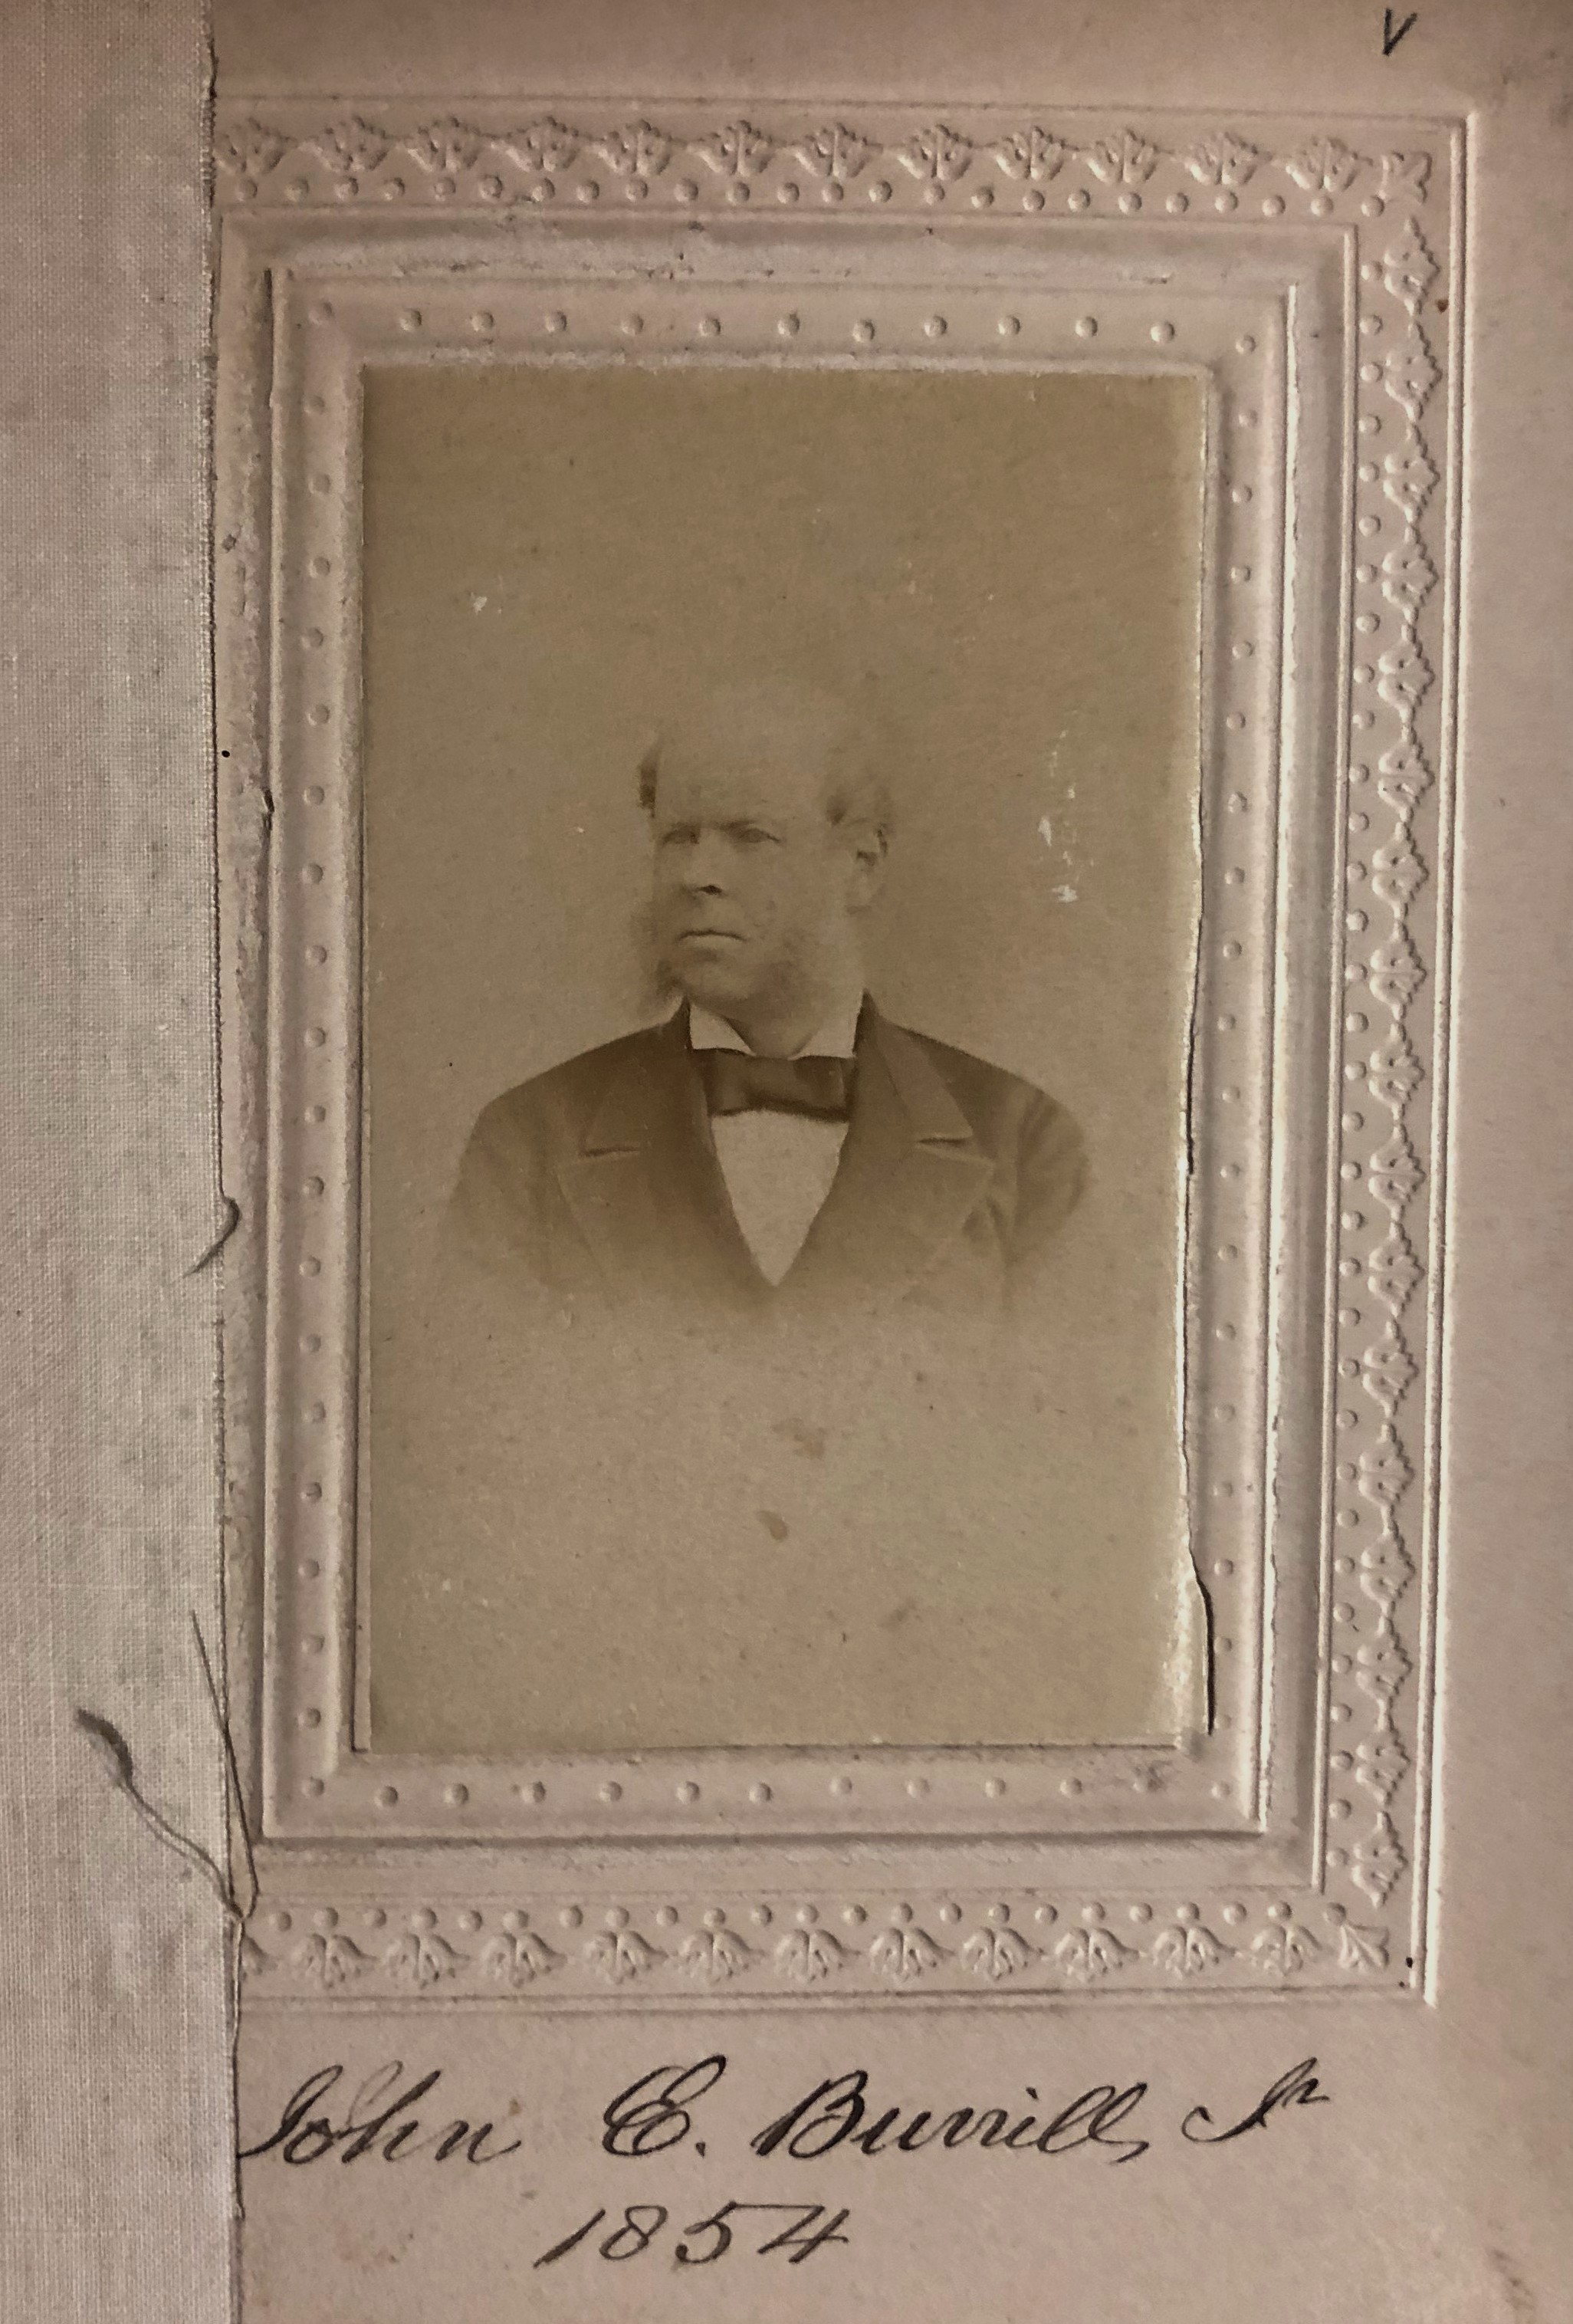 Member portrait of John E. Burrill